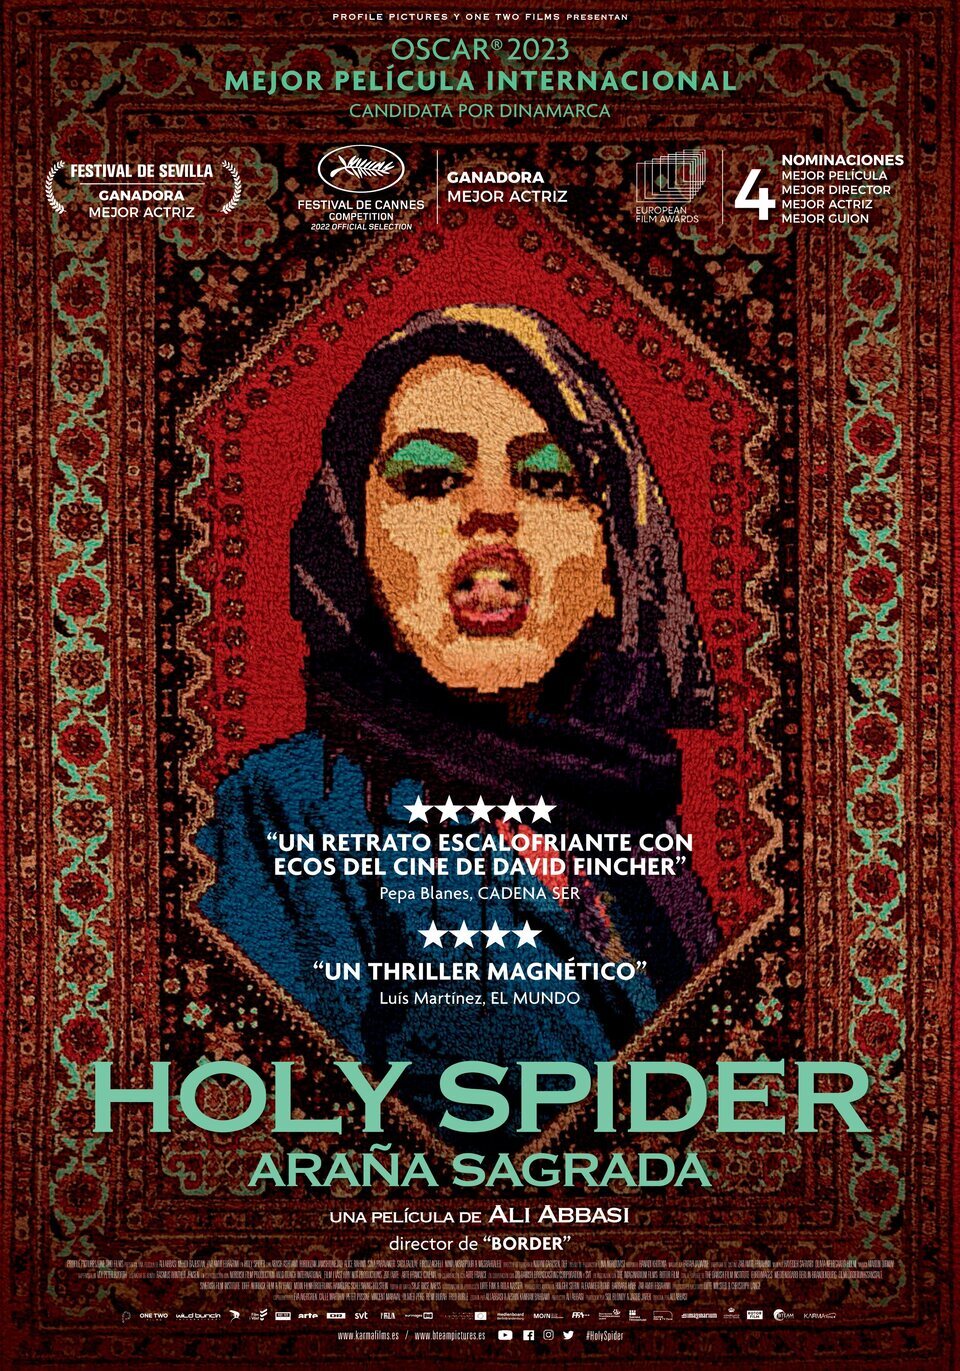 Cartel de Holy Spider (Araña Sagrada) - España